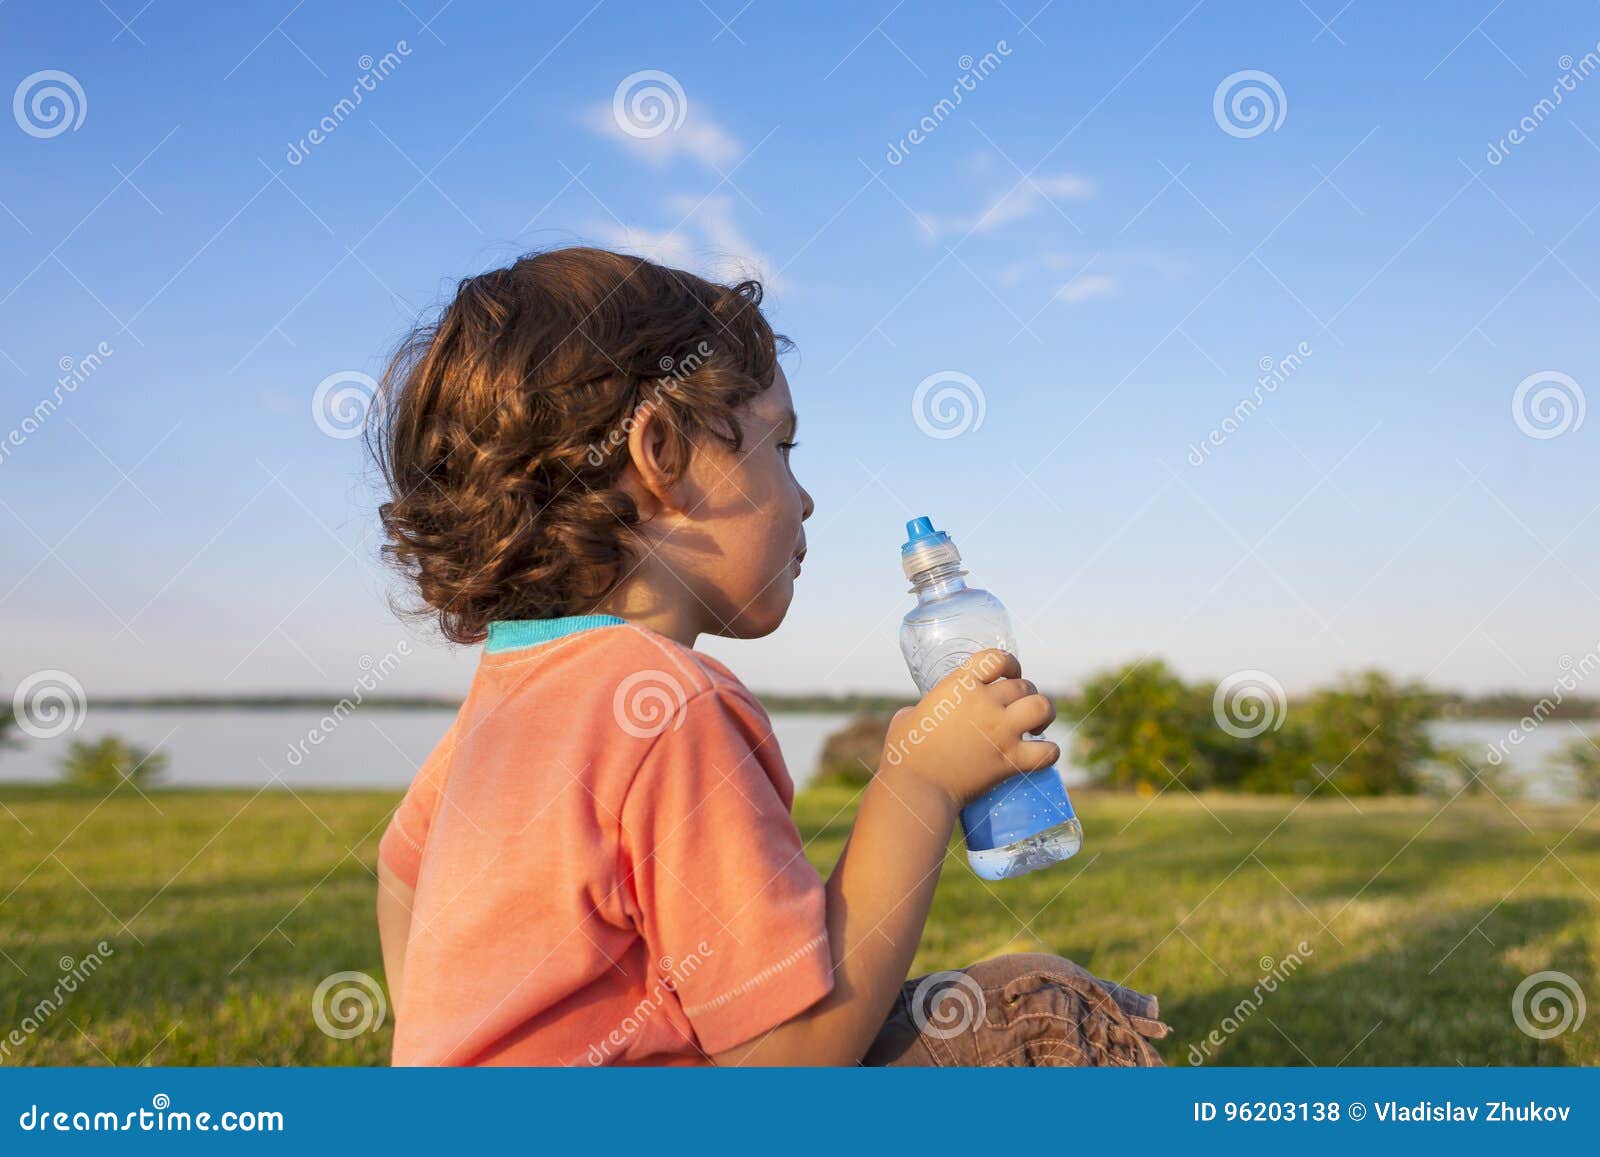 Дети пьют из бутылки. Ребенок пьет воду. Ребенок пьет воду из бутылки. Питьевая вода и здоровье ребенка. Ребенок с бутылкой воды.